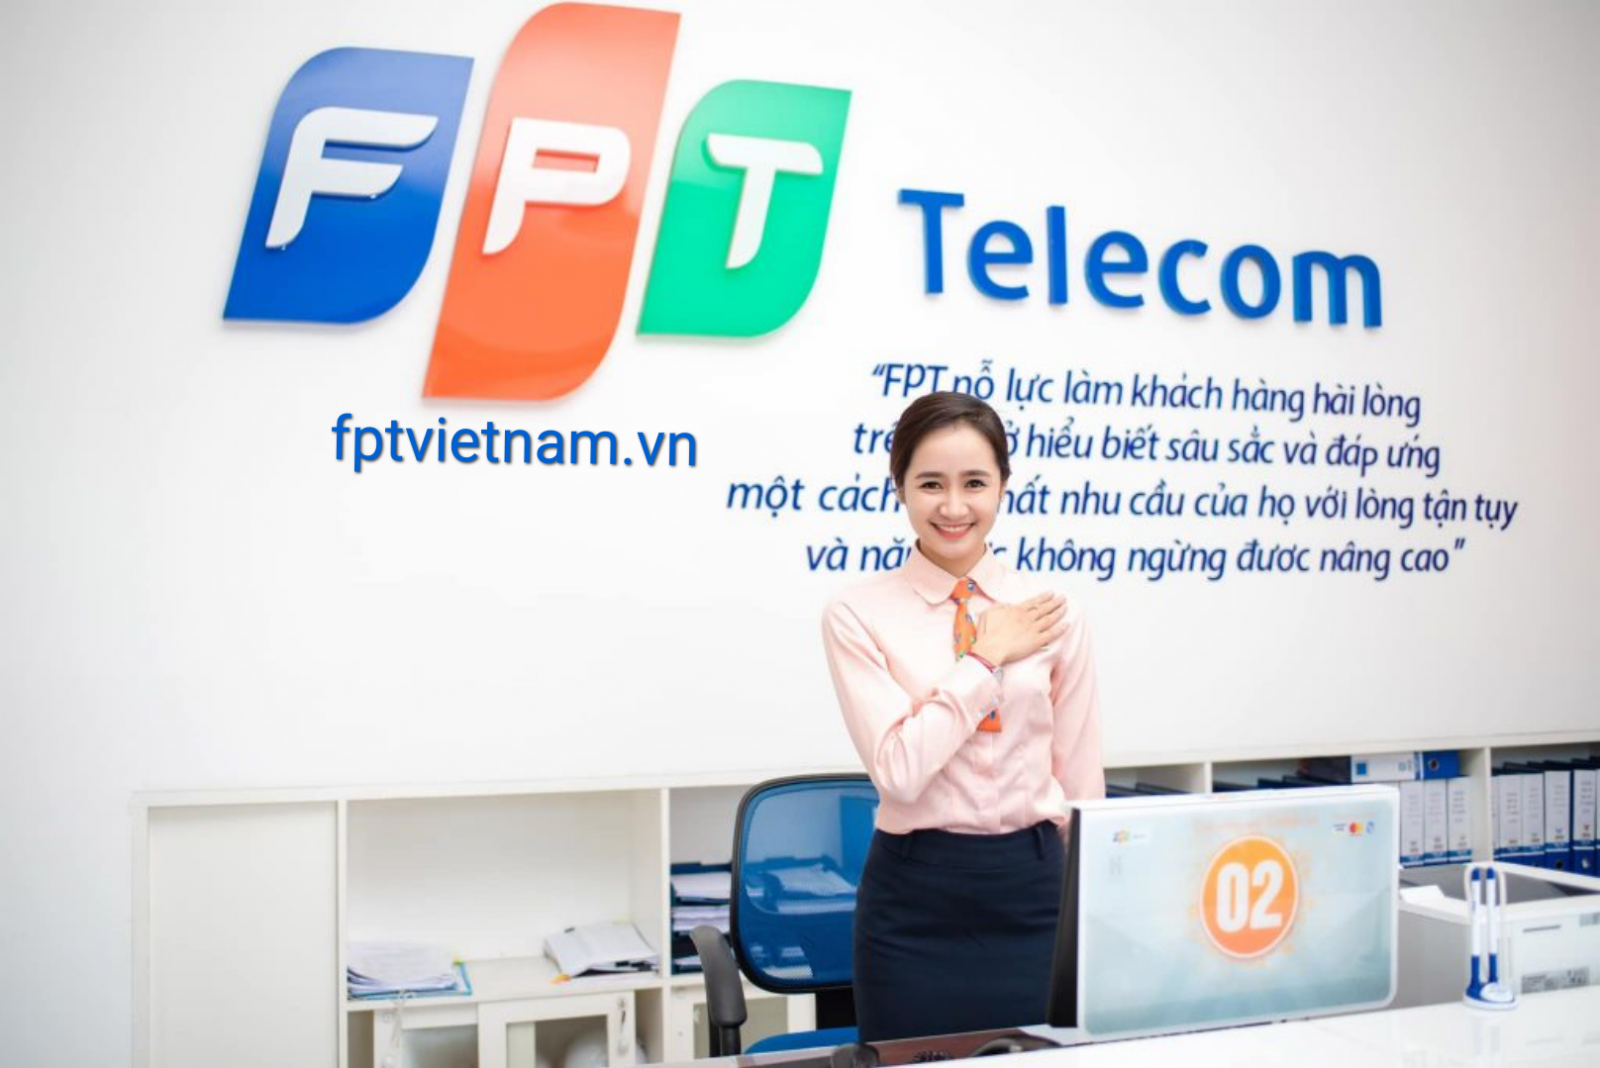 dịch vụ fpt telecom Bình Định